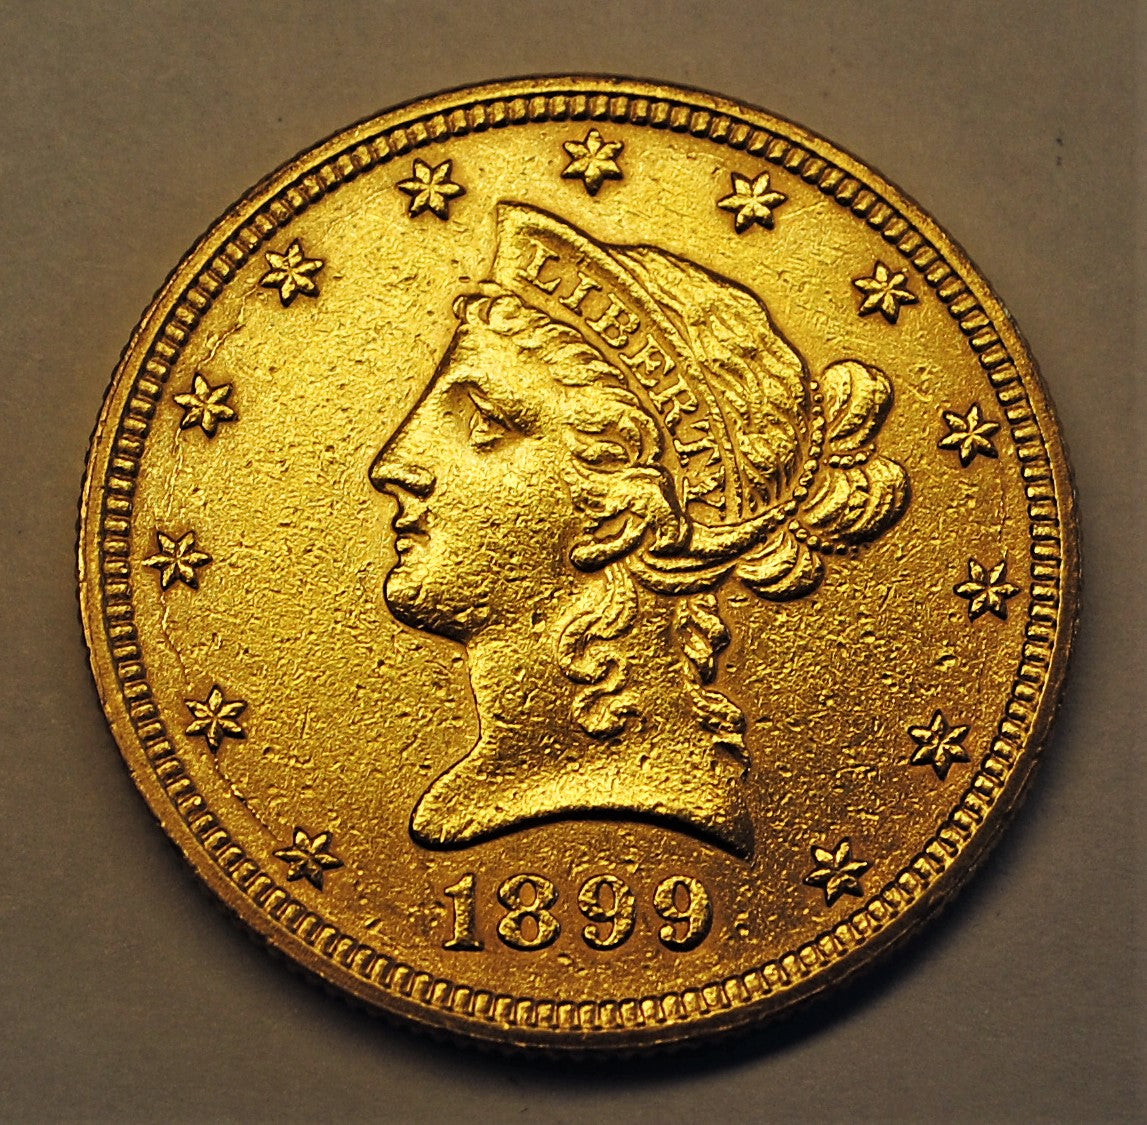 1899-10-dollar-liberty-gold-eagle-coin-917pawnshop